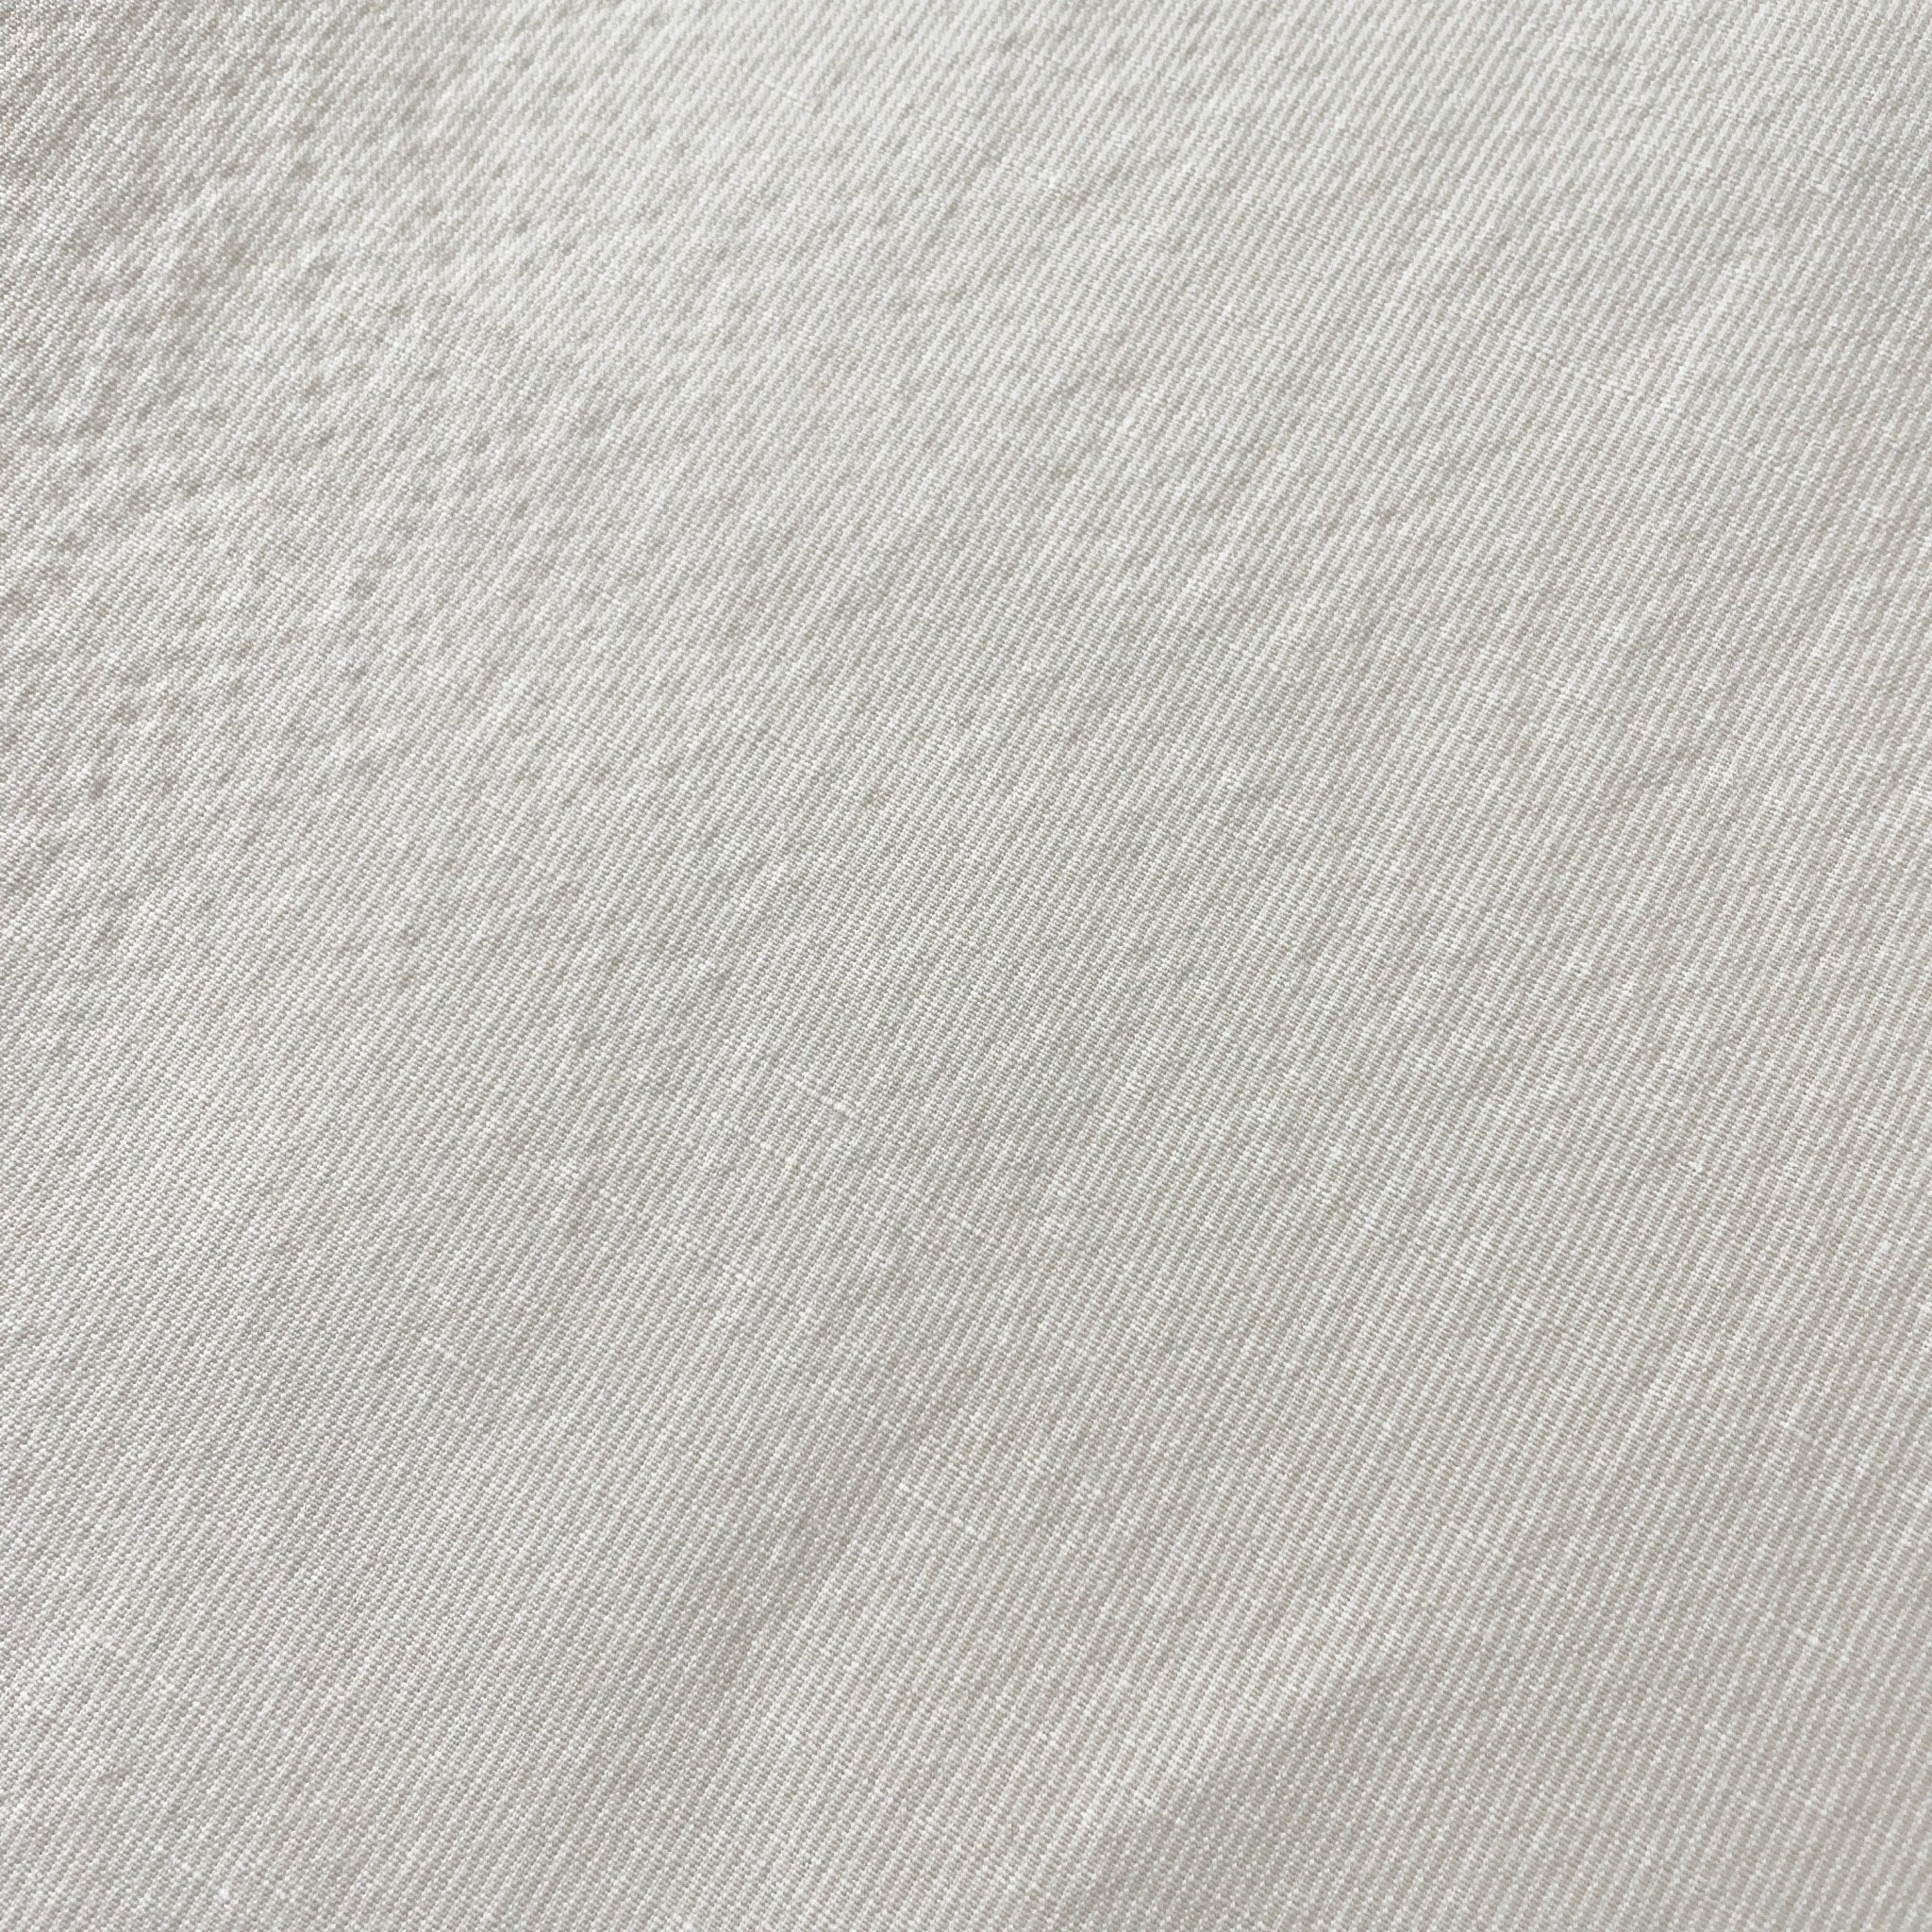 Linen Cotton Stripe Fabric 7087 7088 - The Linen Lab - 7087 BEIGE